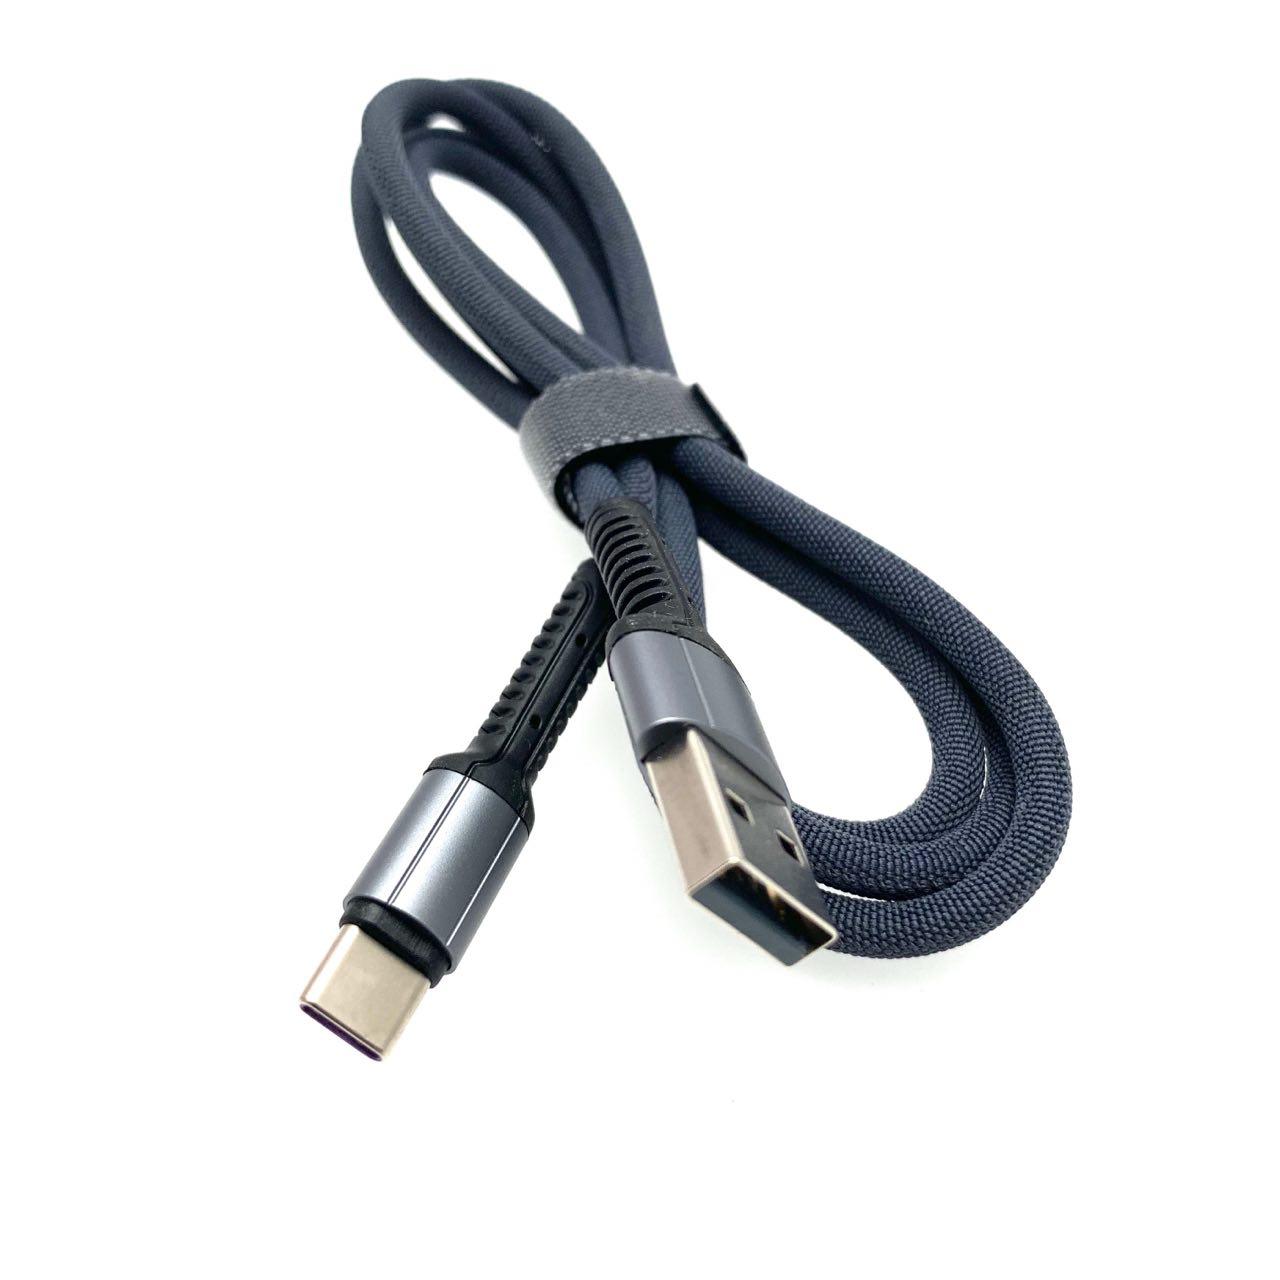 USB Дата-кабель "X25" Type-C USB в тканевой оплётке, длина 1 метр, цвет оболочки чёрный.